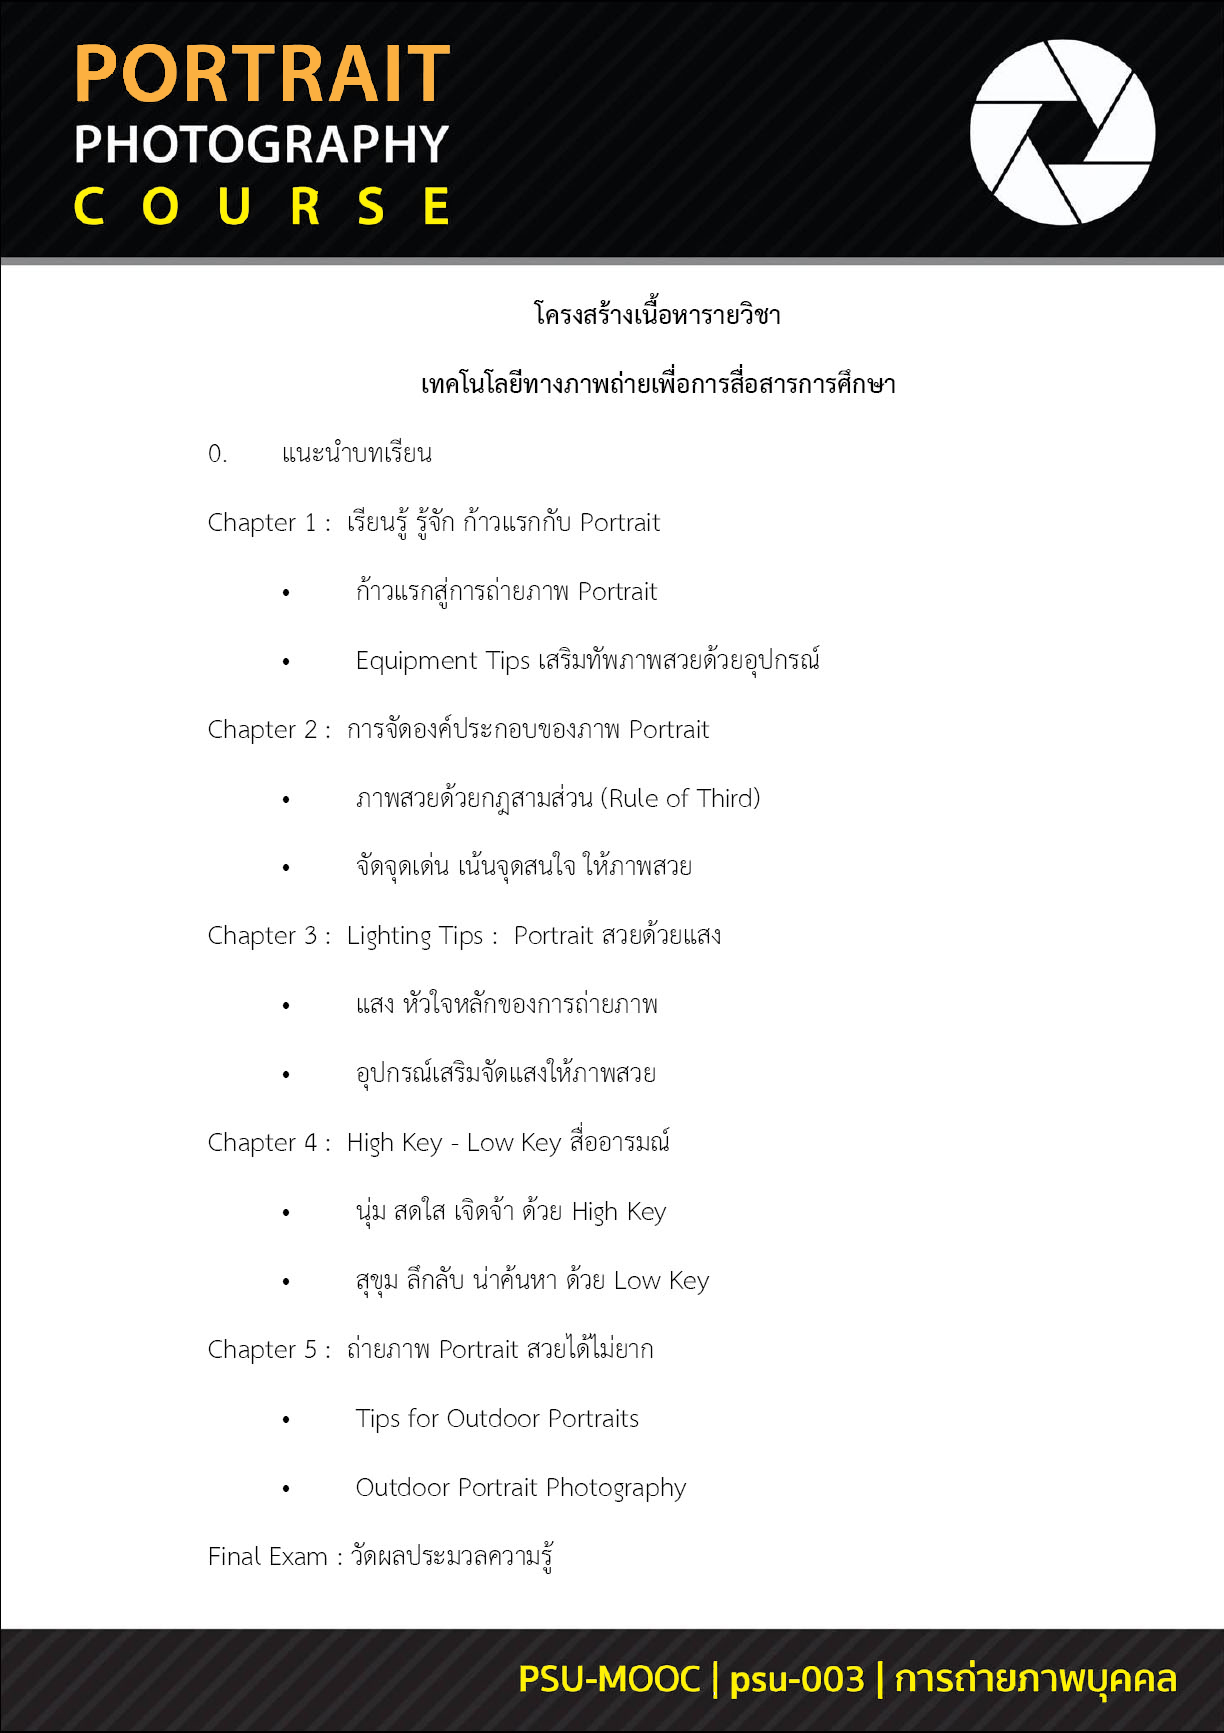 หลักสูตรอบรมออนไลน์ Thai MOOC เรื่อง เทคโนโลยีทางภาพถ่ายเพื่อสื่อสารการศึกษา